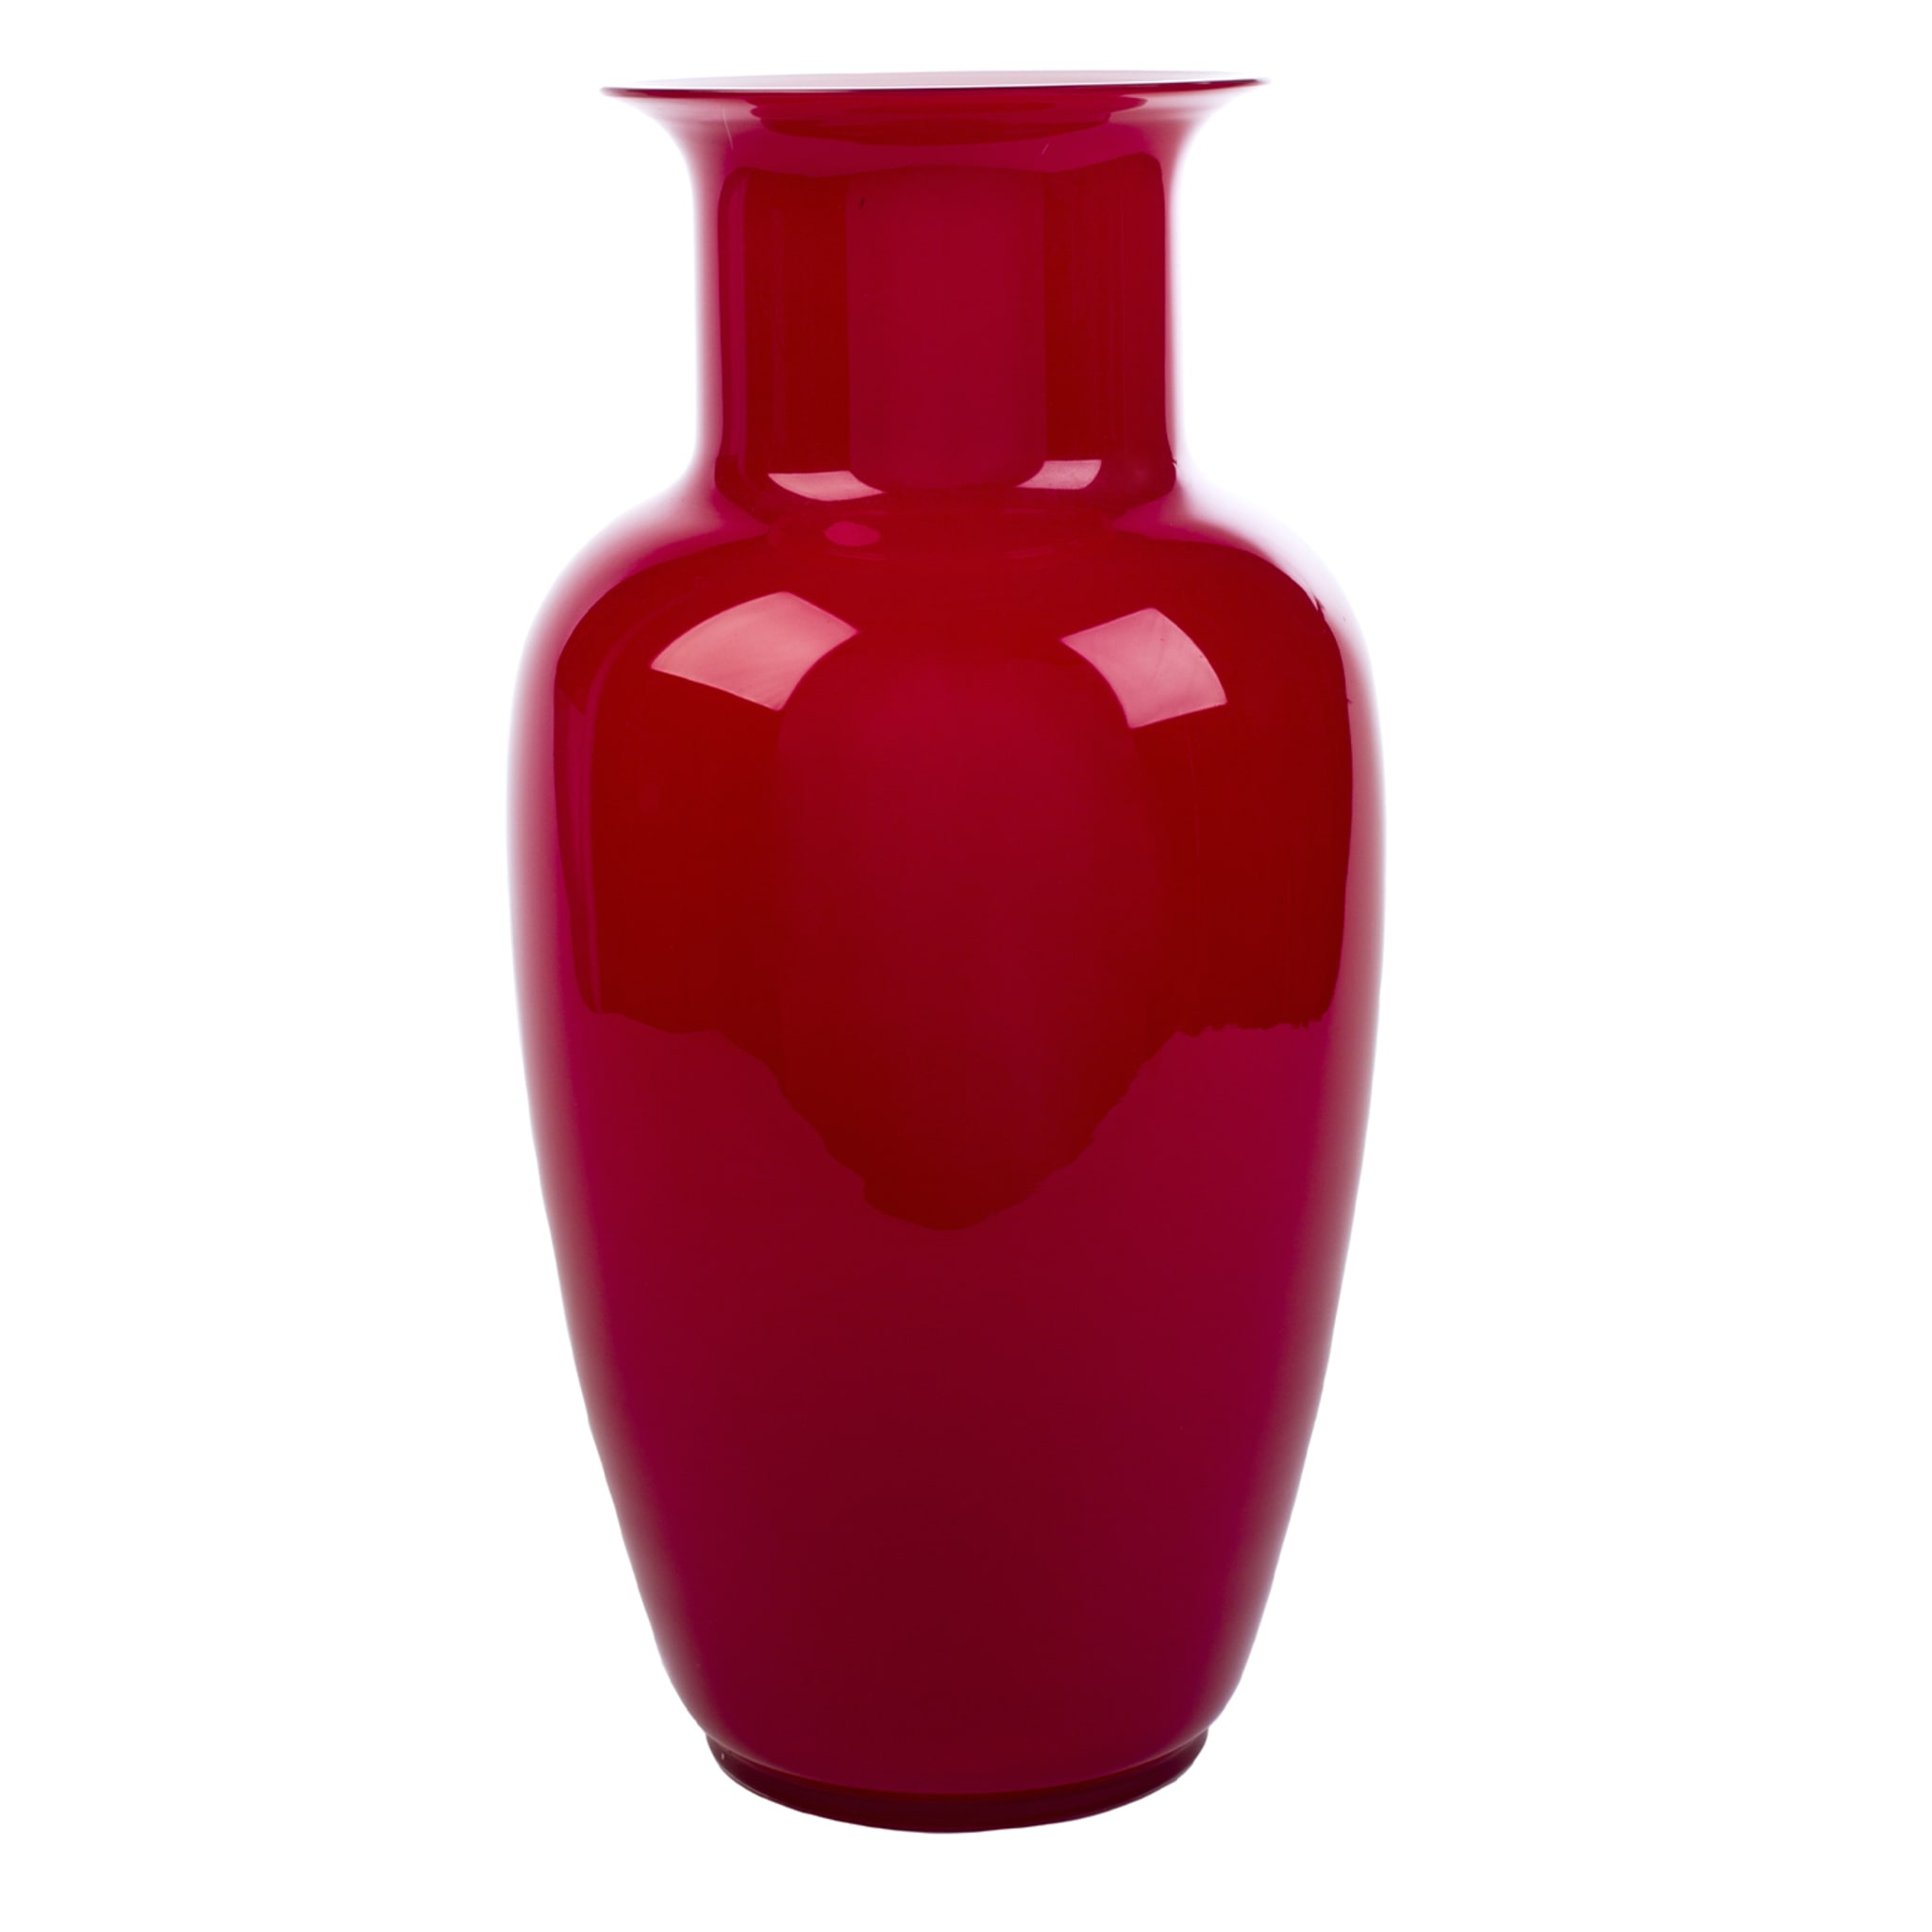 Demajo Incamiciato Red and White Vase - Alternative view 5